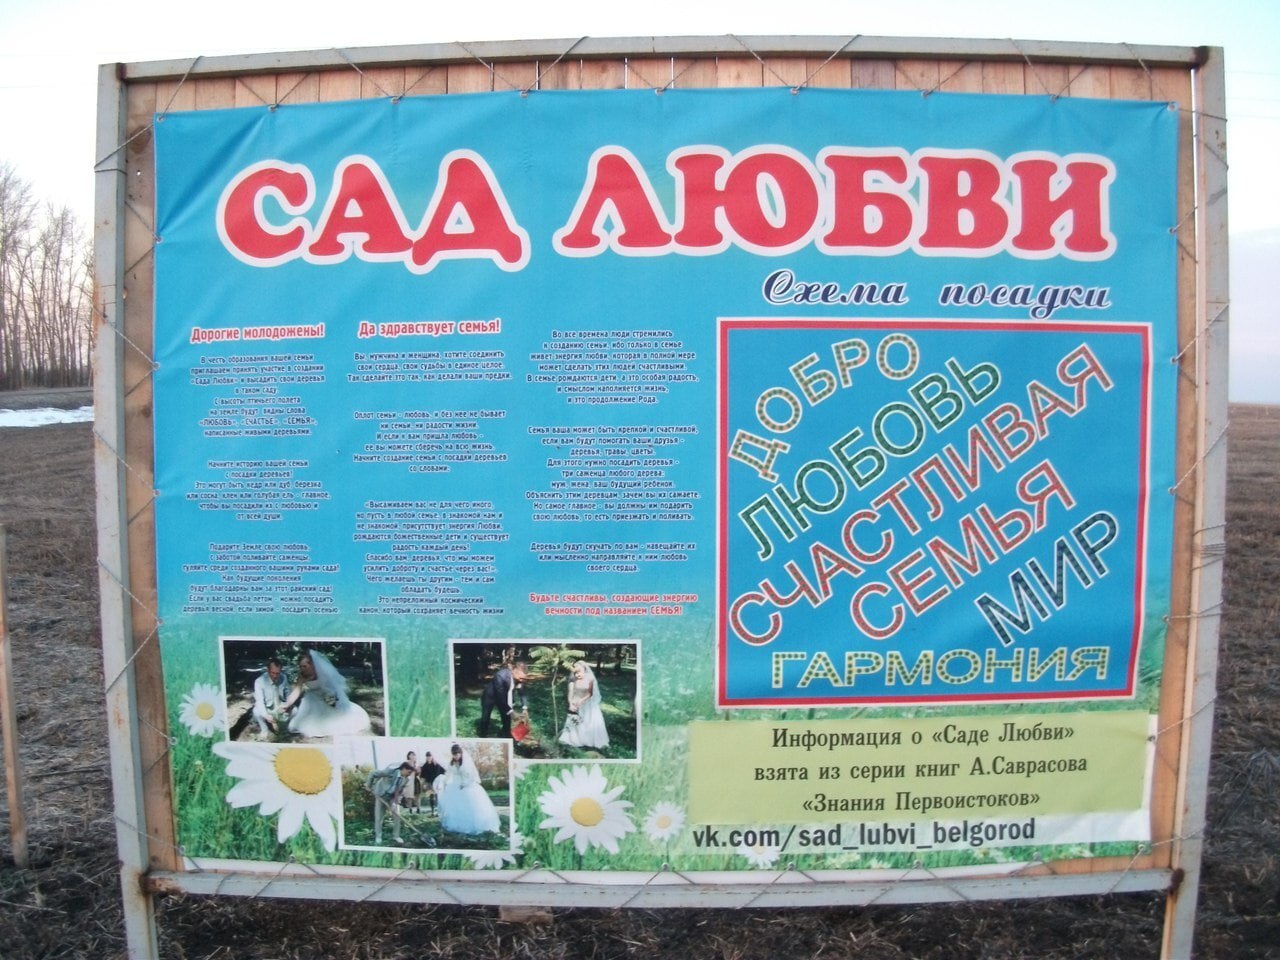 Белгородская журналистка заметила на плакате возле прохоровского «Сада любви» отсылку к религиозному объединению «анастасийцев» 